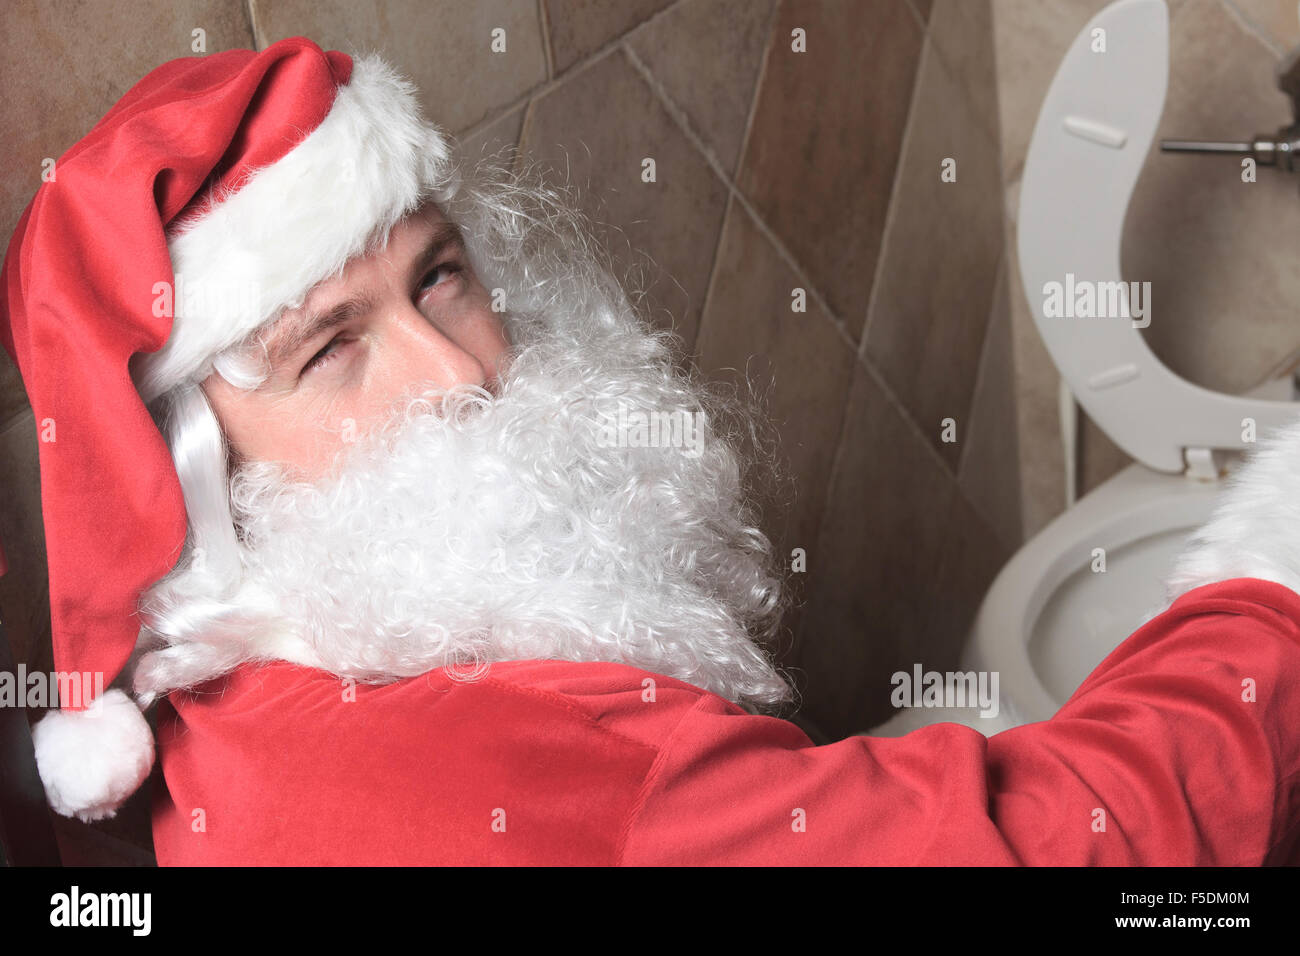 Santa claud sic au bar toilettes Banque D'Images